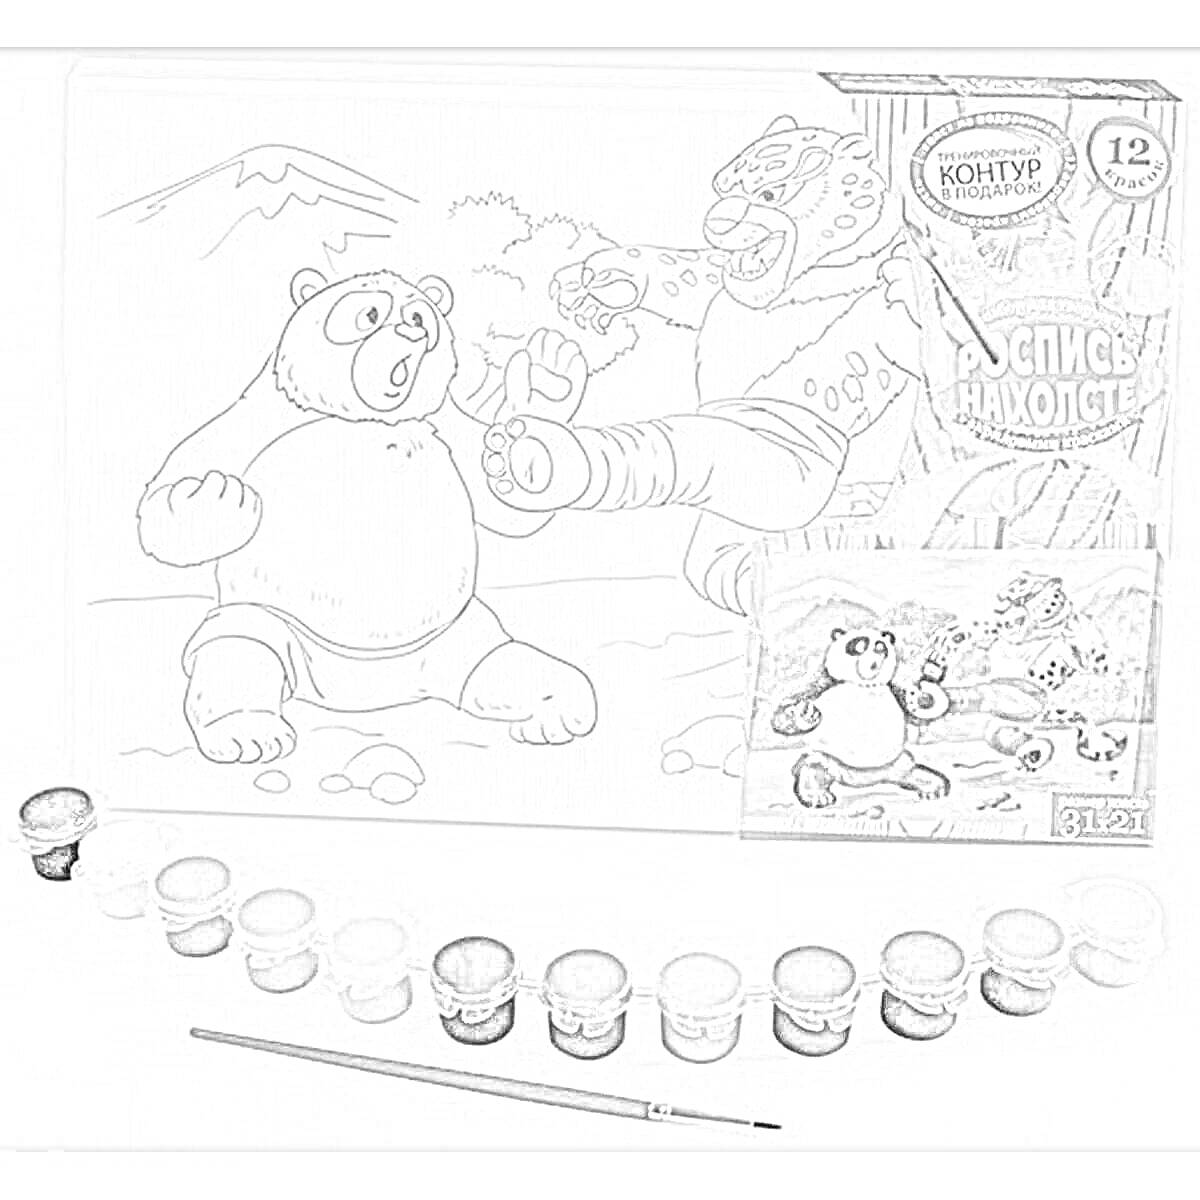 Медведь и горилла сражаются на фоне гор. В наборе: раскраска на холсте с изображением медведя и гориллы, 12 баночек с акриловыми красками и кисточка.